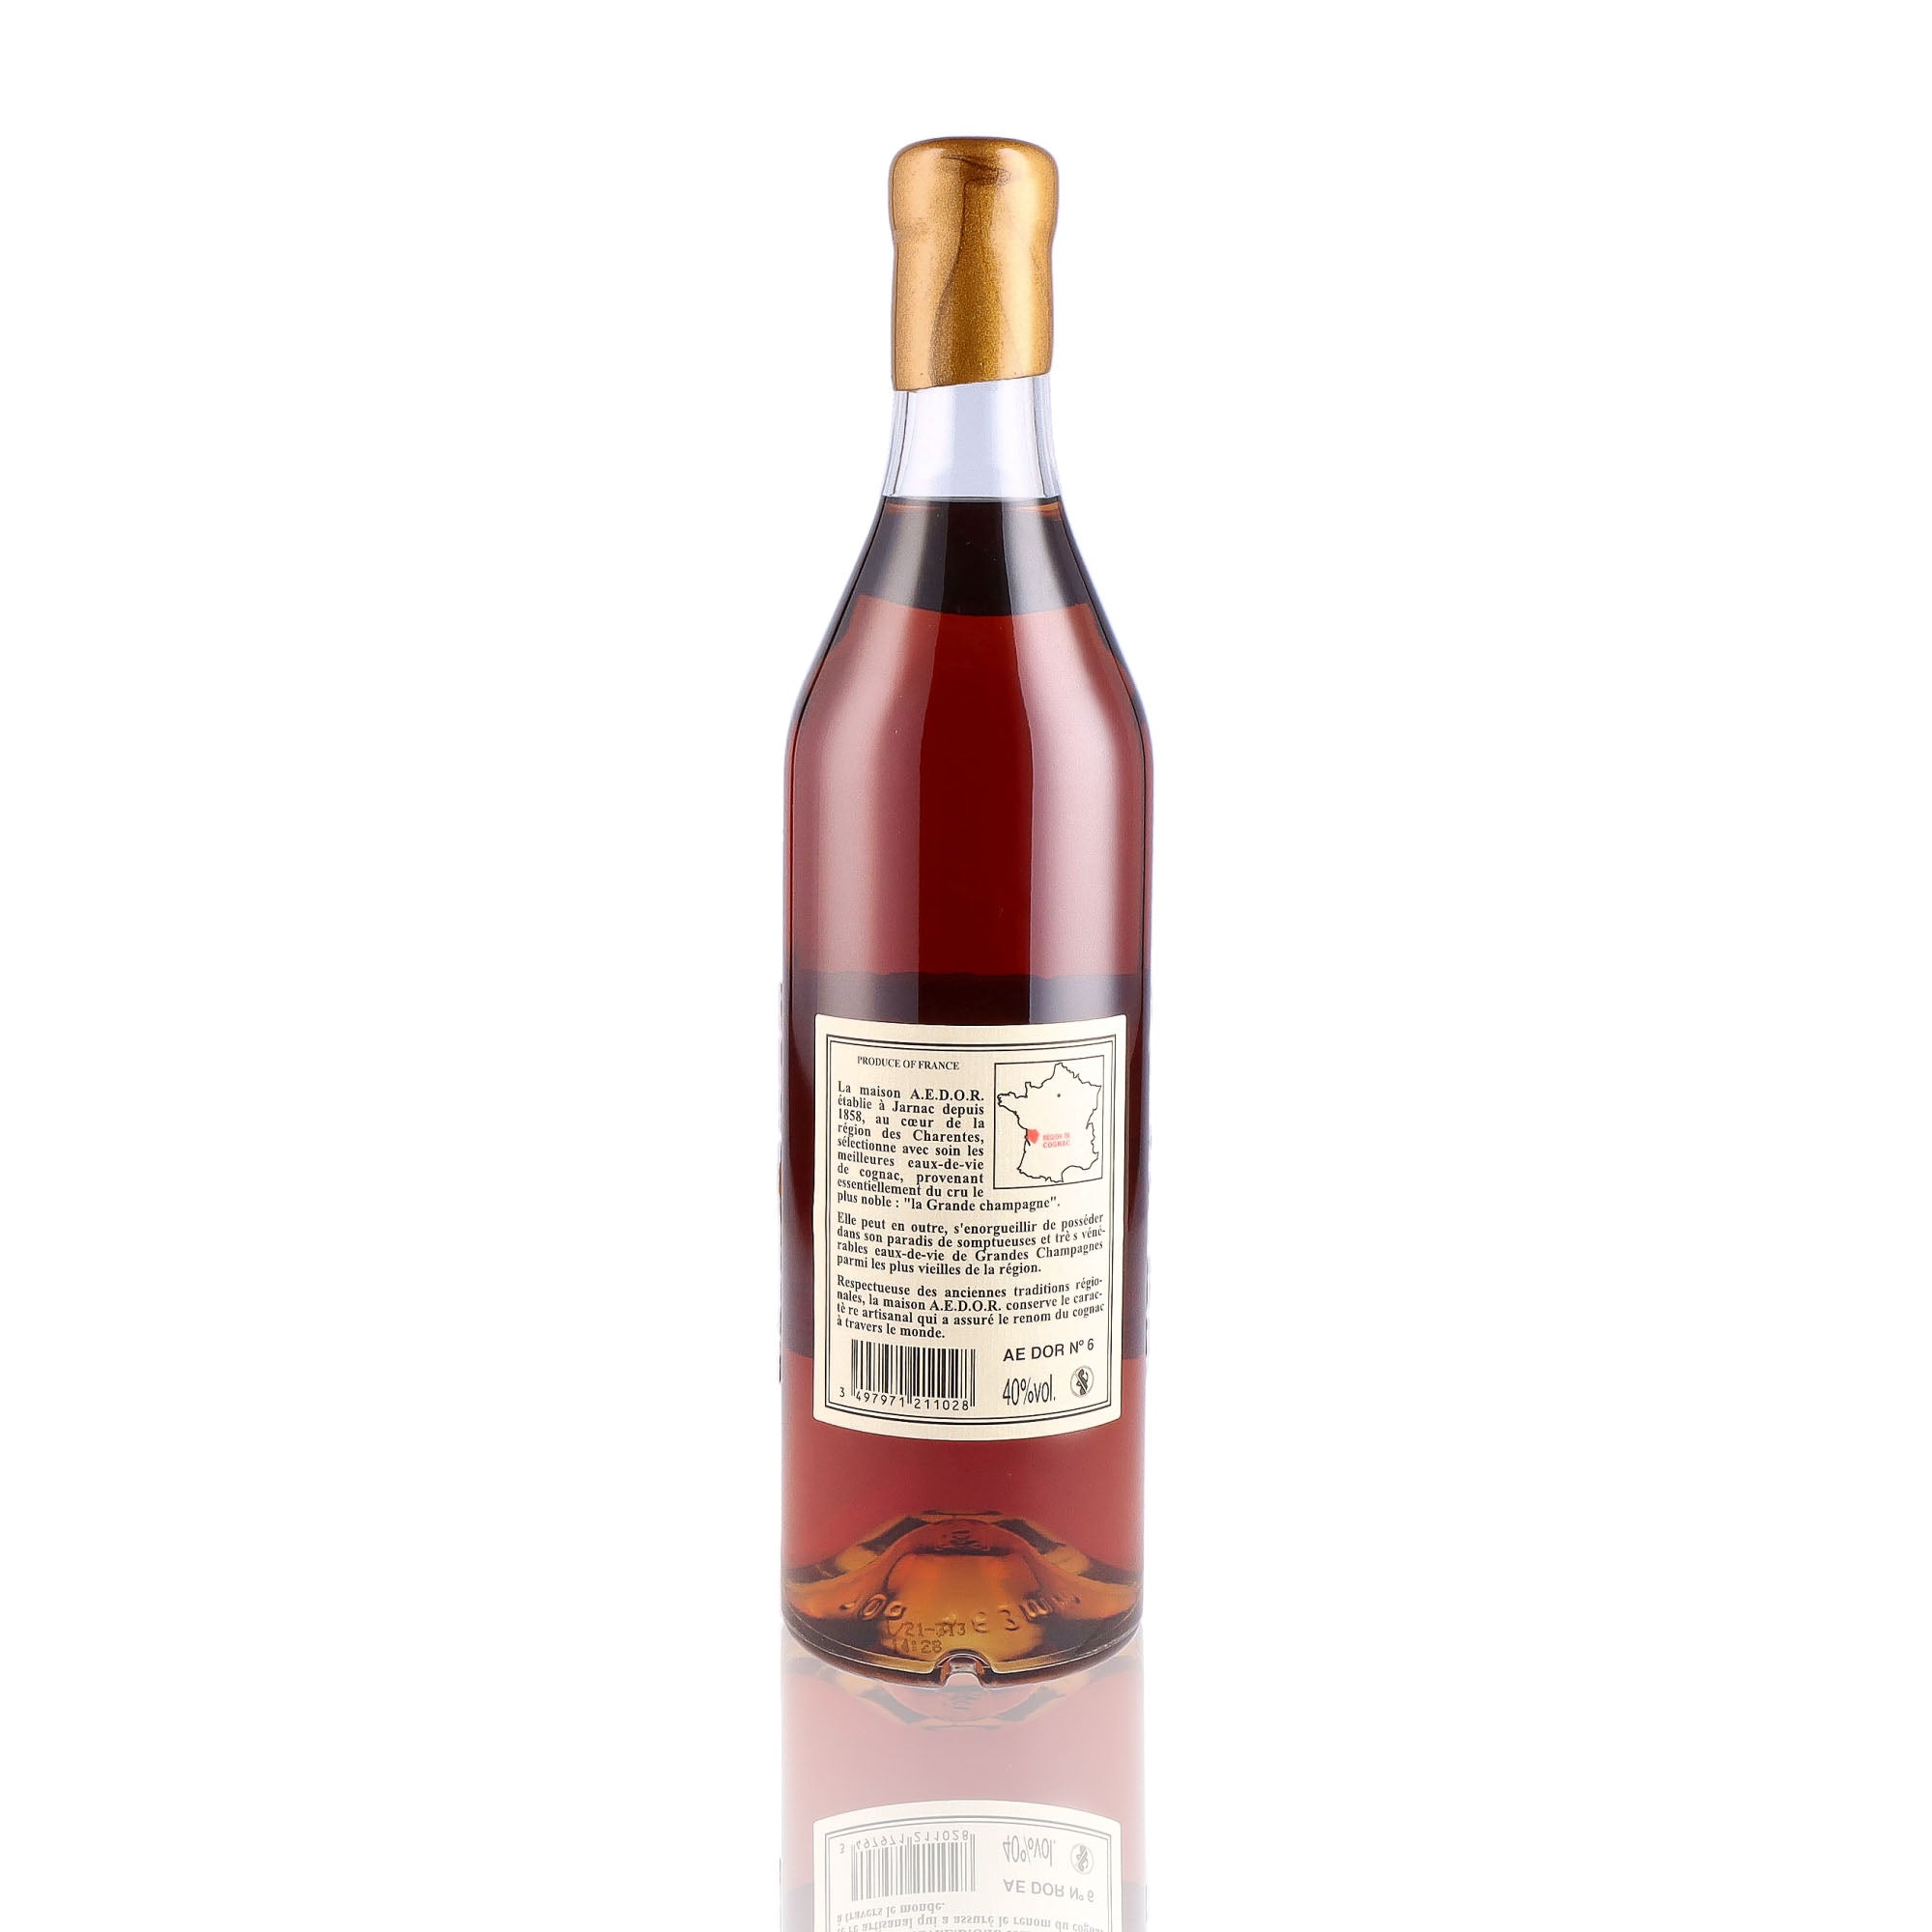 Une bouteille de Cognac, de la marque A.E DOR, nommée Vieille Réserve N°6 Grande Champagne.